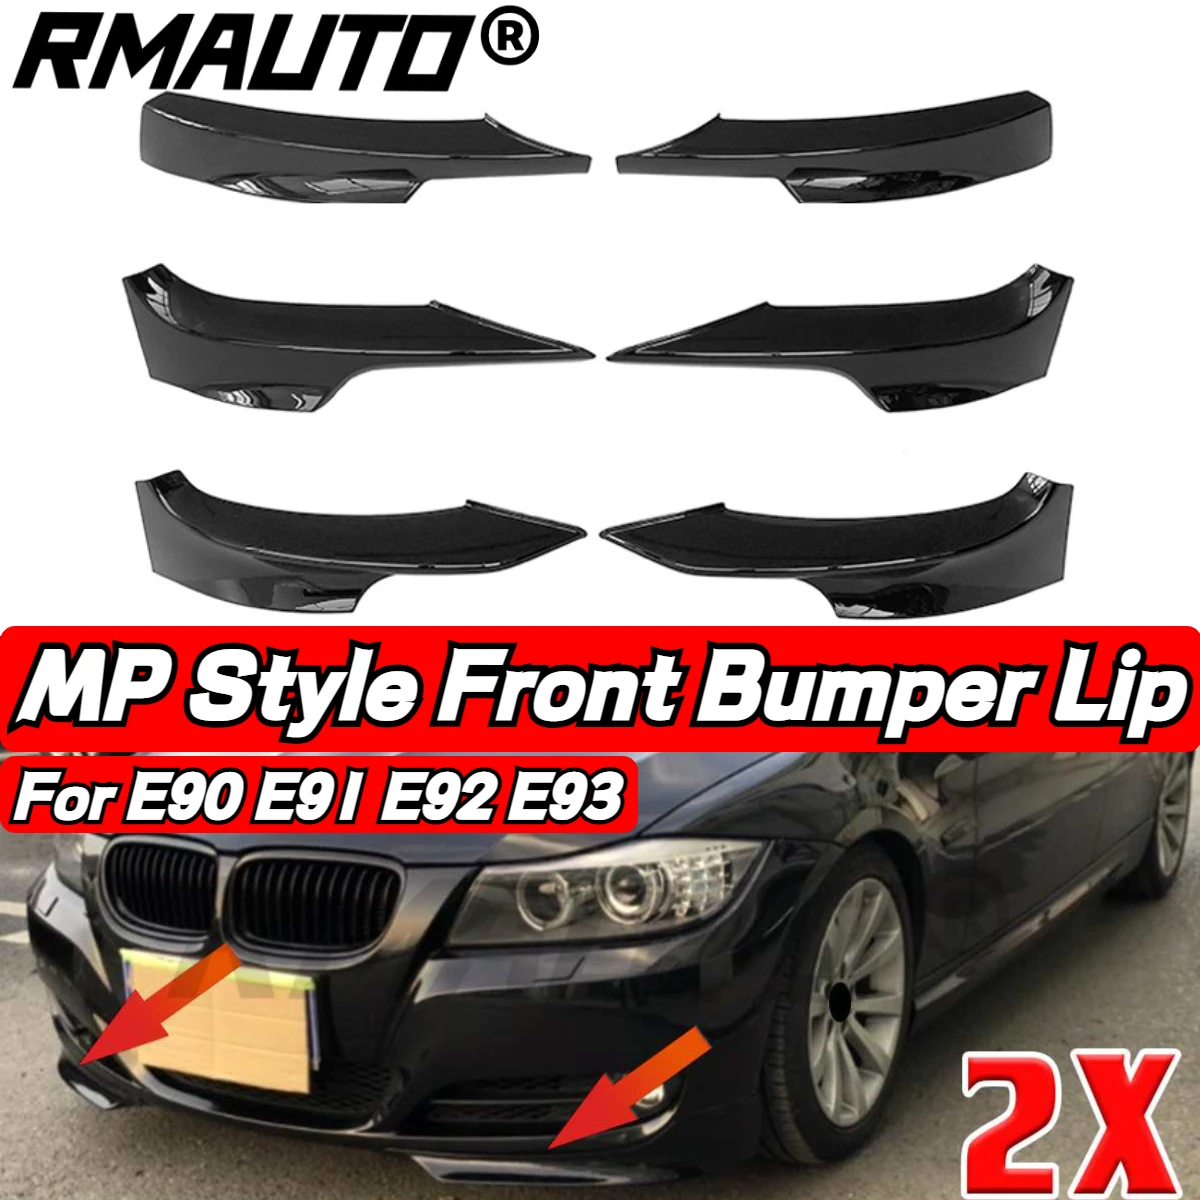 

RMAUTO 2Pcs Car Front Bumper Spoiler Lip MP Style Winglets Side Skirt Splitter Guard For BMW 3 Series E90 E91 E92 E93 2005-2011